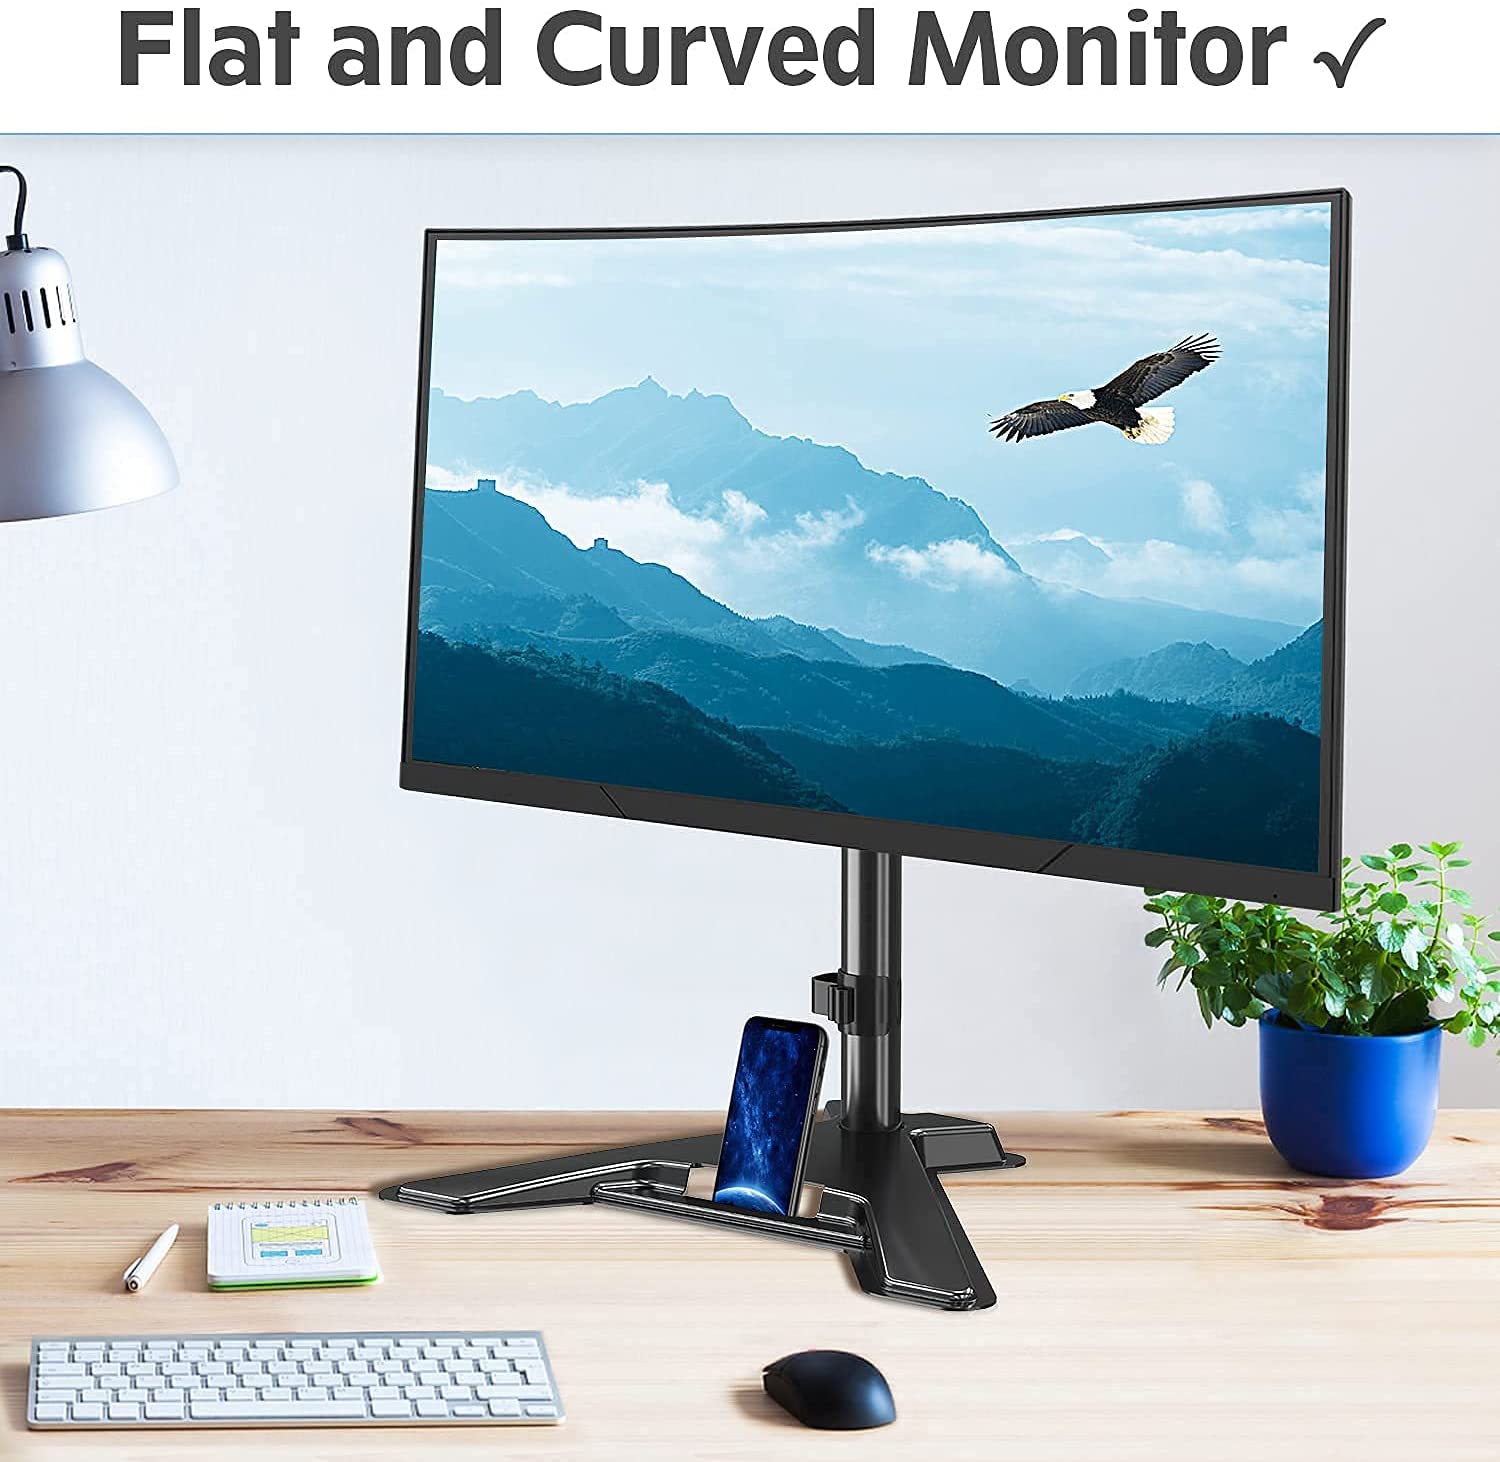 Dual Monitor Desk Mount for Max 32'' Monitors MP0005